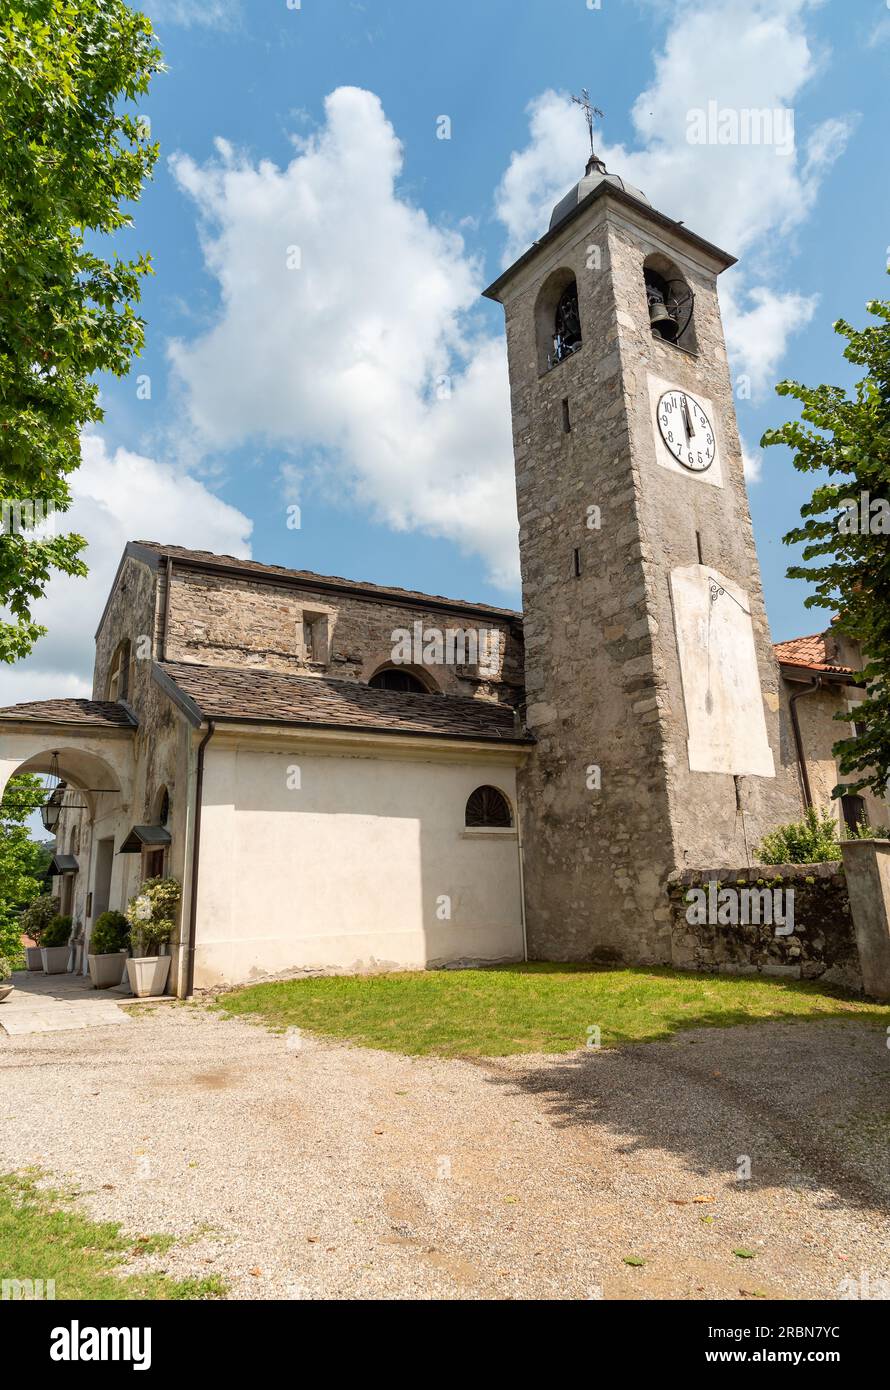 Campanile dell'antica chiesa parrocchiale di San Martino nel parco di Oleggio Castello, provincia di Novara, Piemonte, Italia Foto Stock